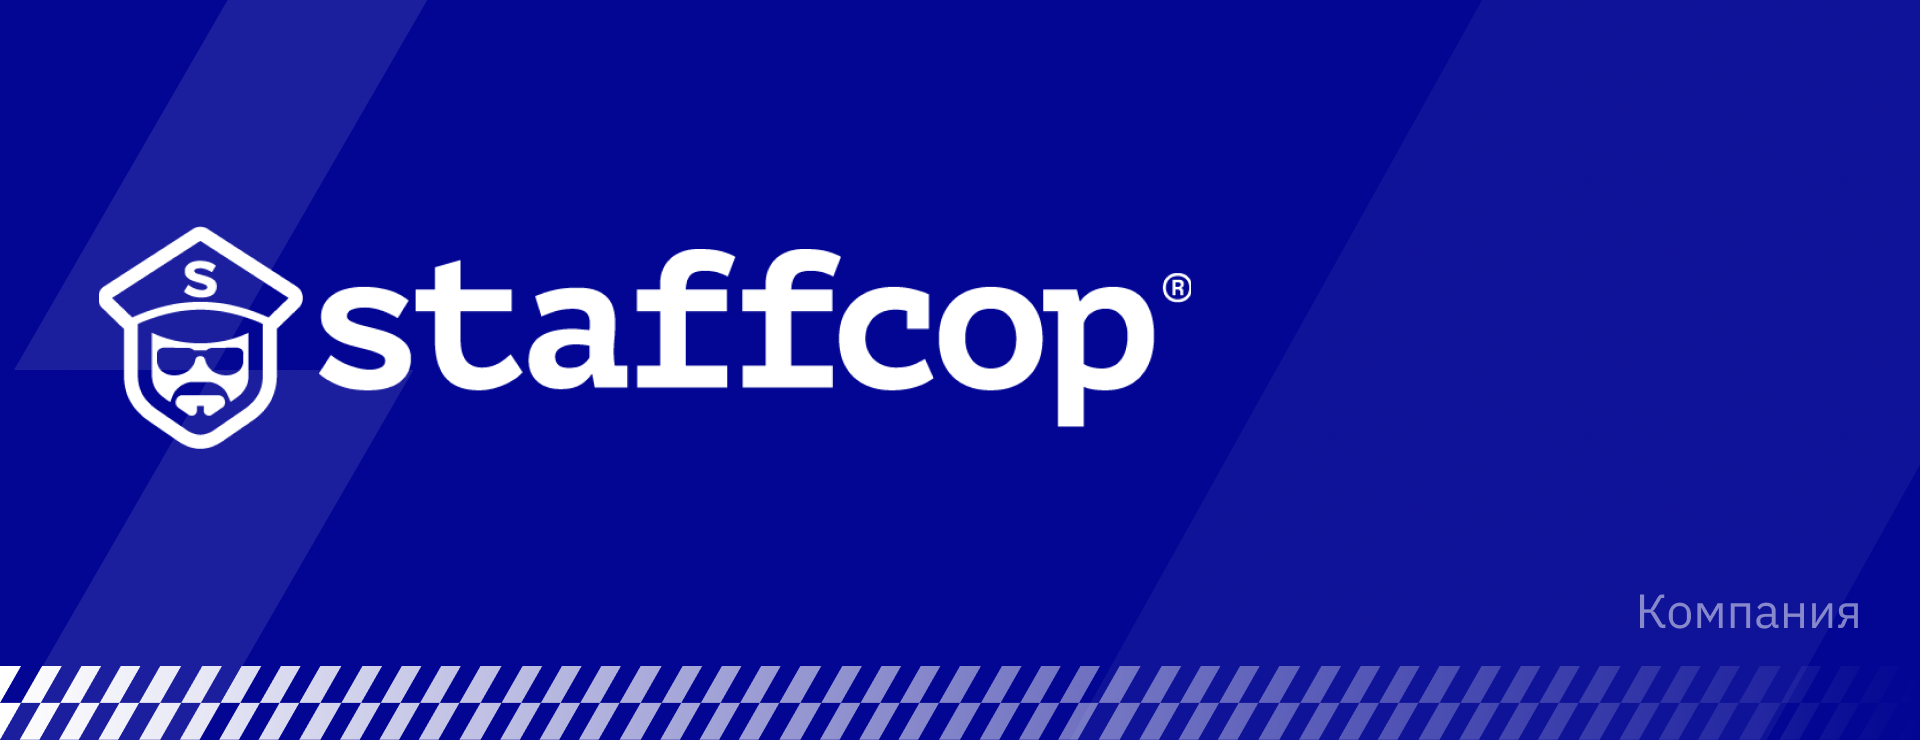 Новый логотип и фирменный стиль Staffcop